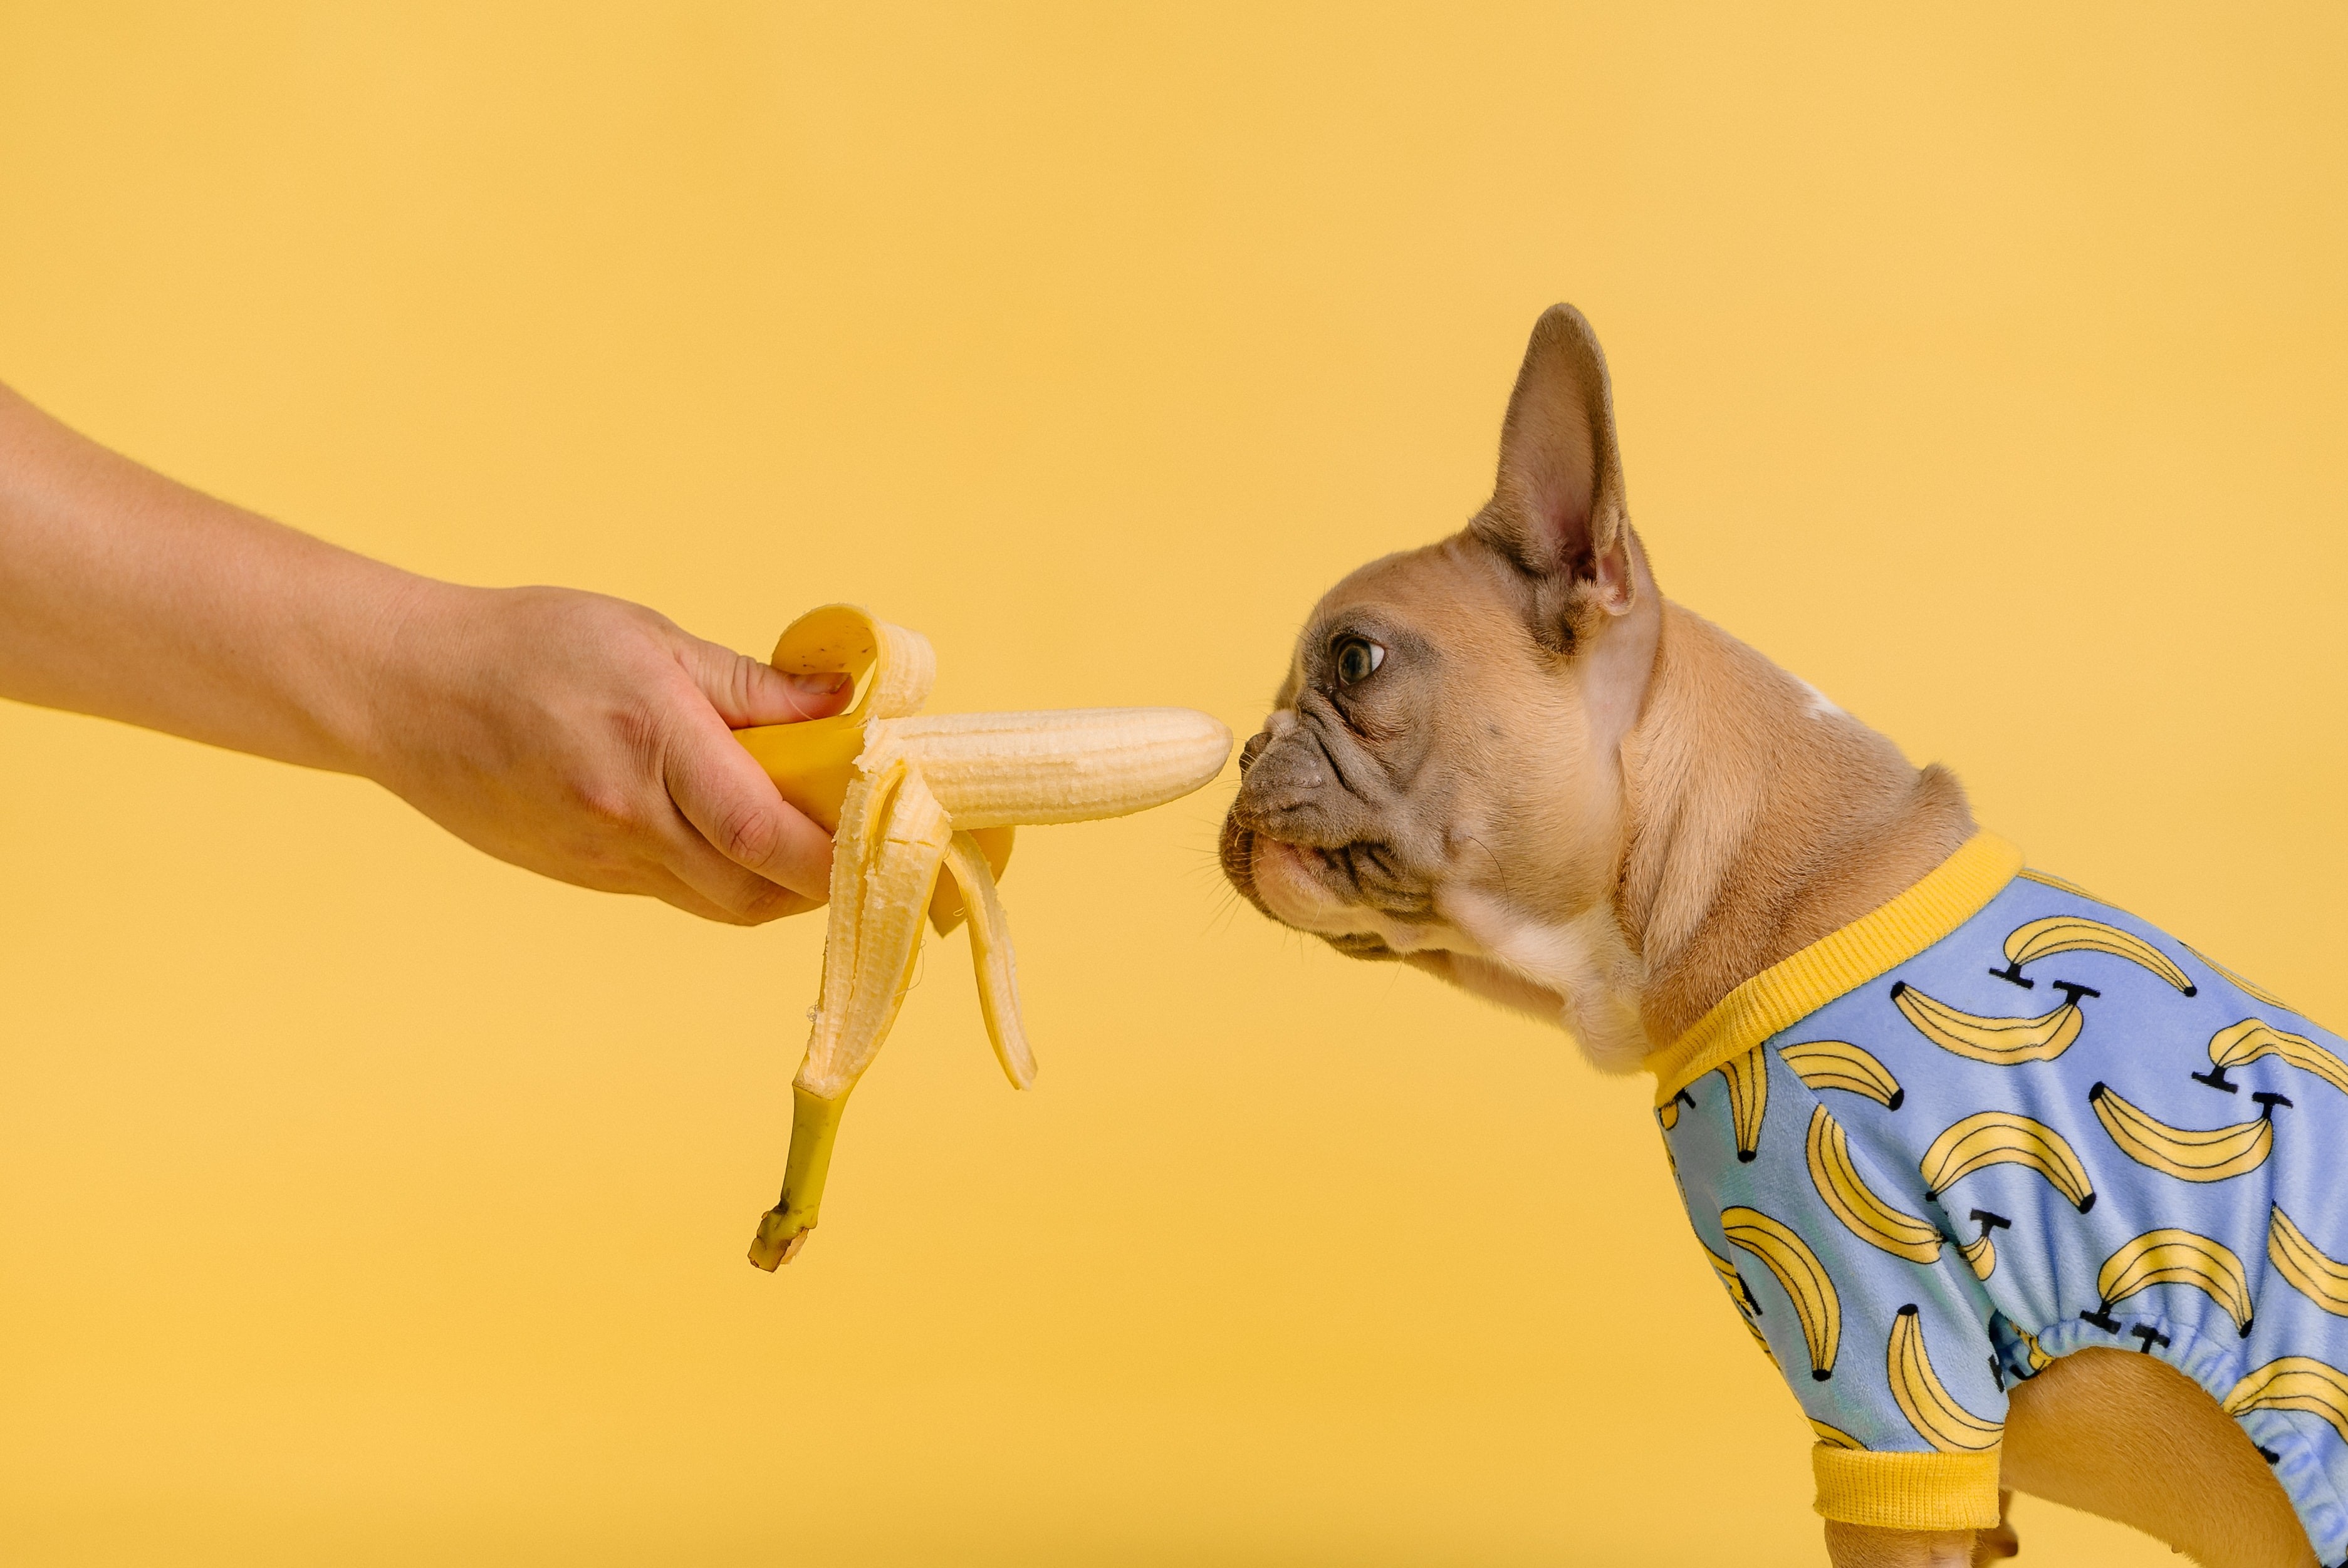 Segundo Nader Ghosn, especialista em alimentos saudáveis da Dentalight, estudos indicam que a obesidade reduz, em média, 2 anos da vida de um cão (Foto: Unsplash / CreativeCommons)